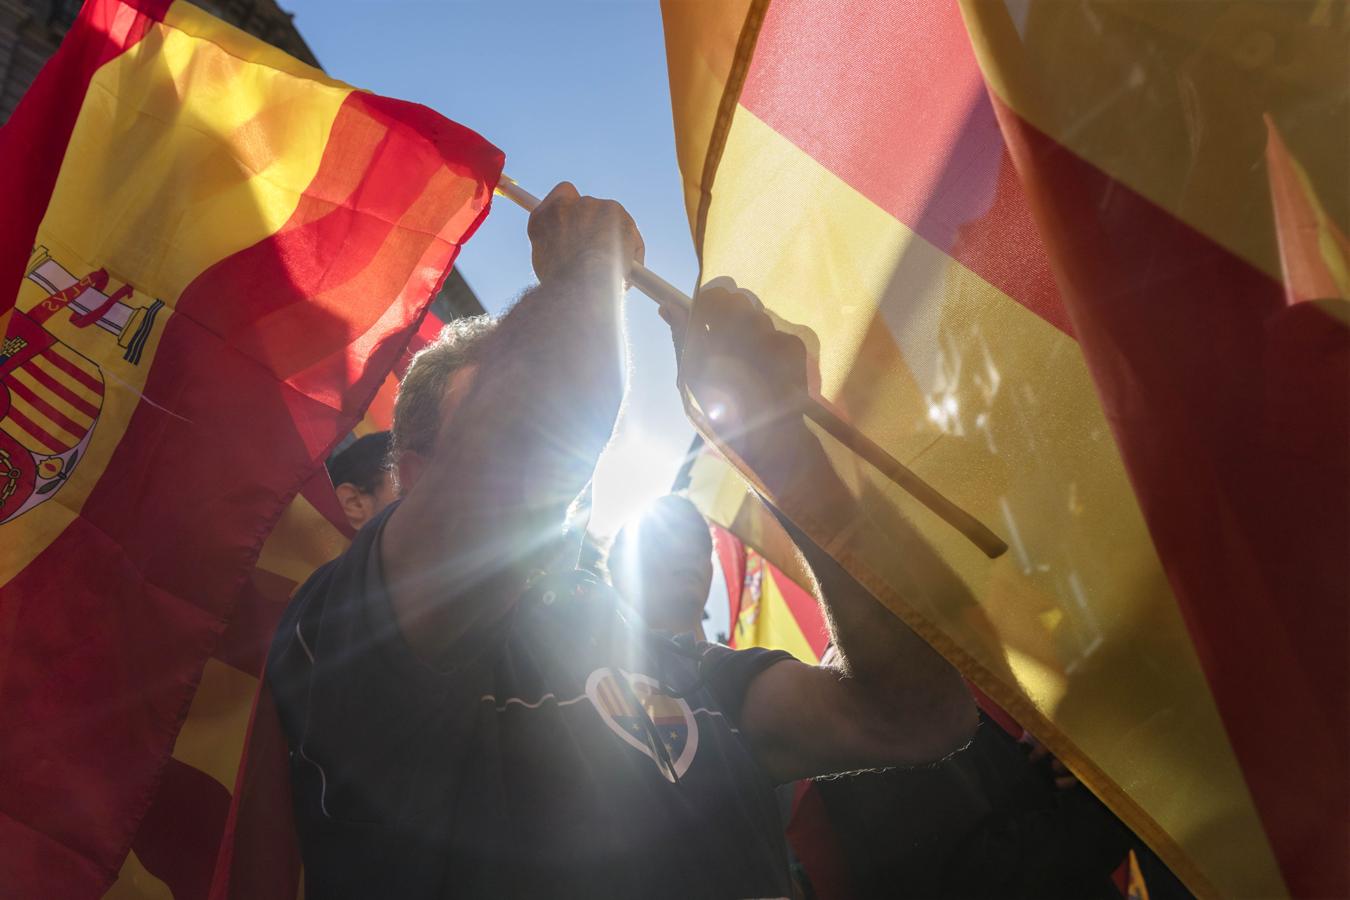 Cataluña se ha inundado de aplausos, vítores y mensajes de apoyo a la unidad de España y contra la deriva independentista de Cataluña. 